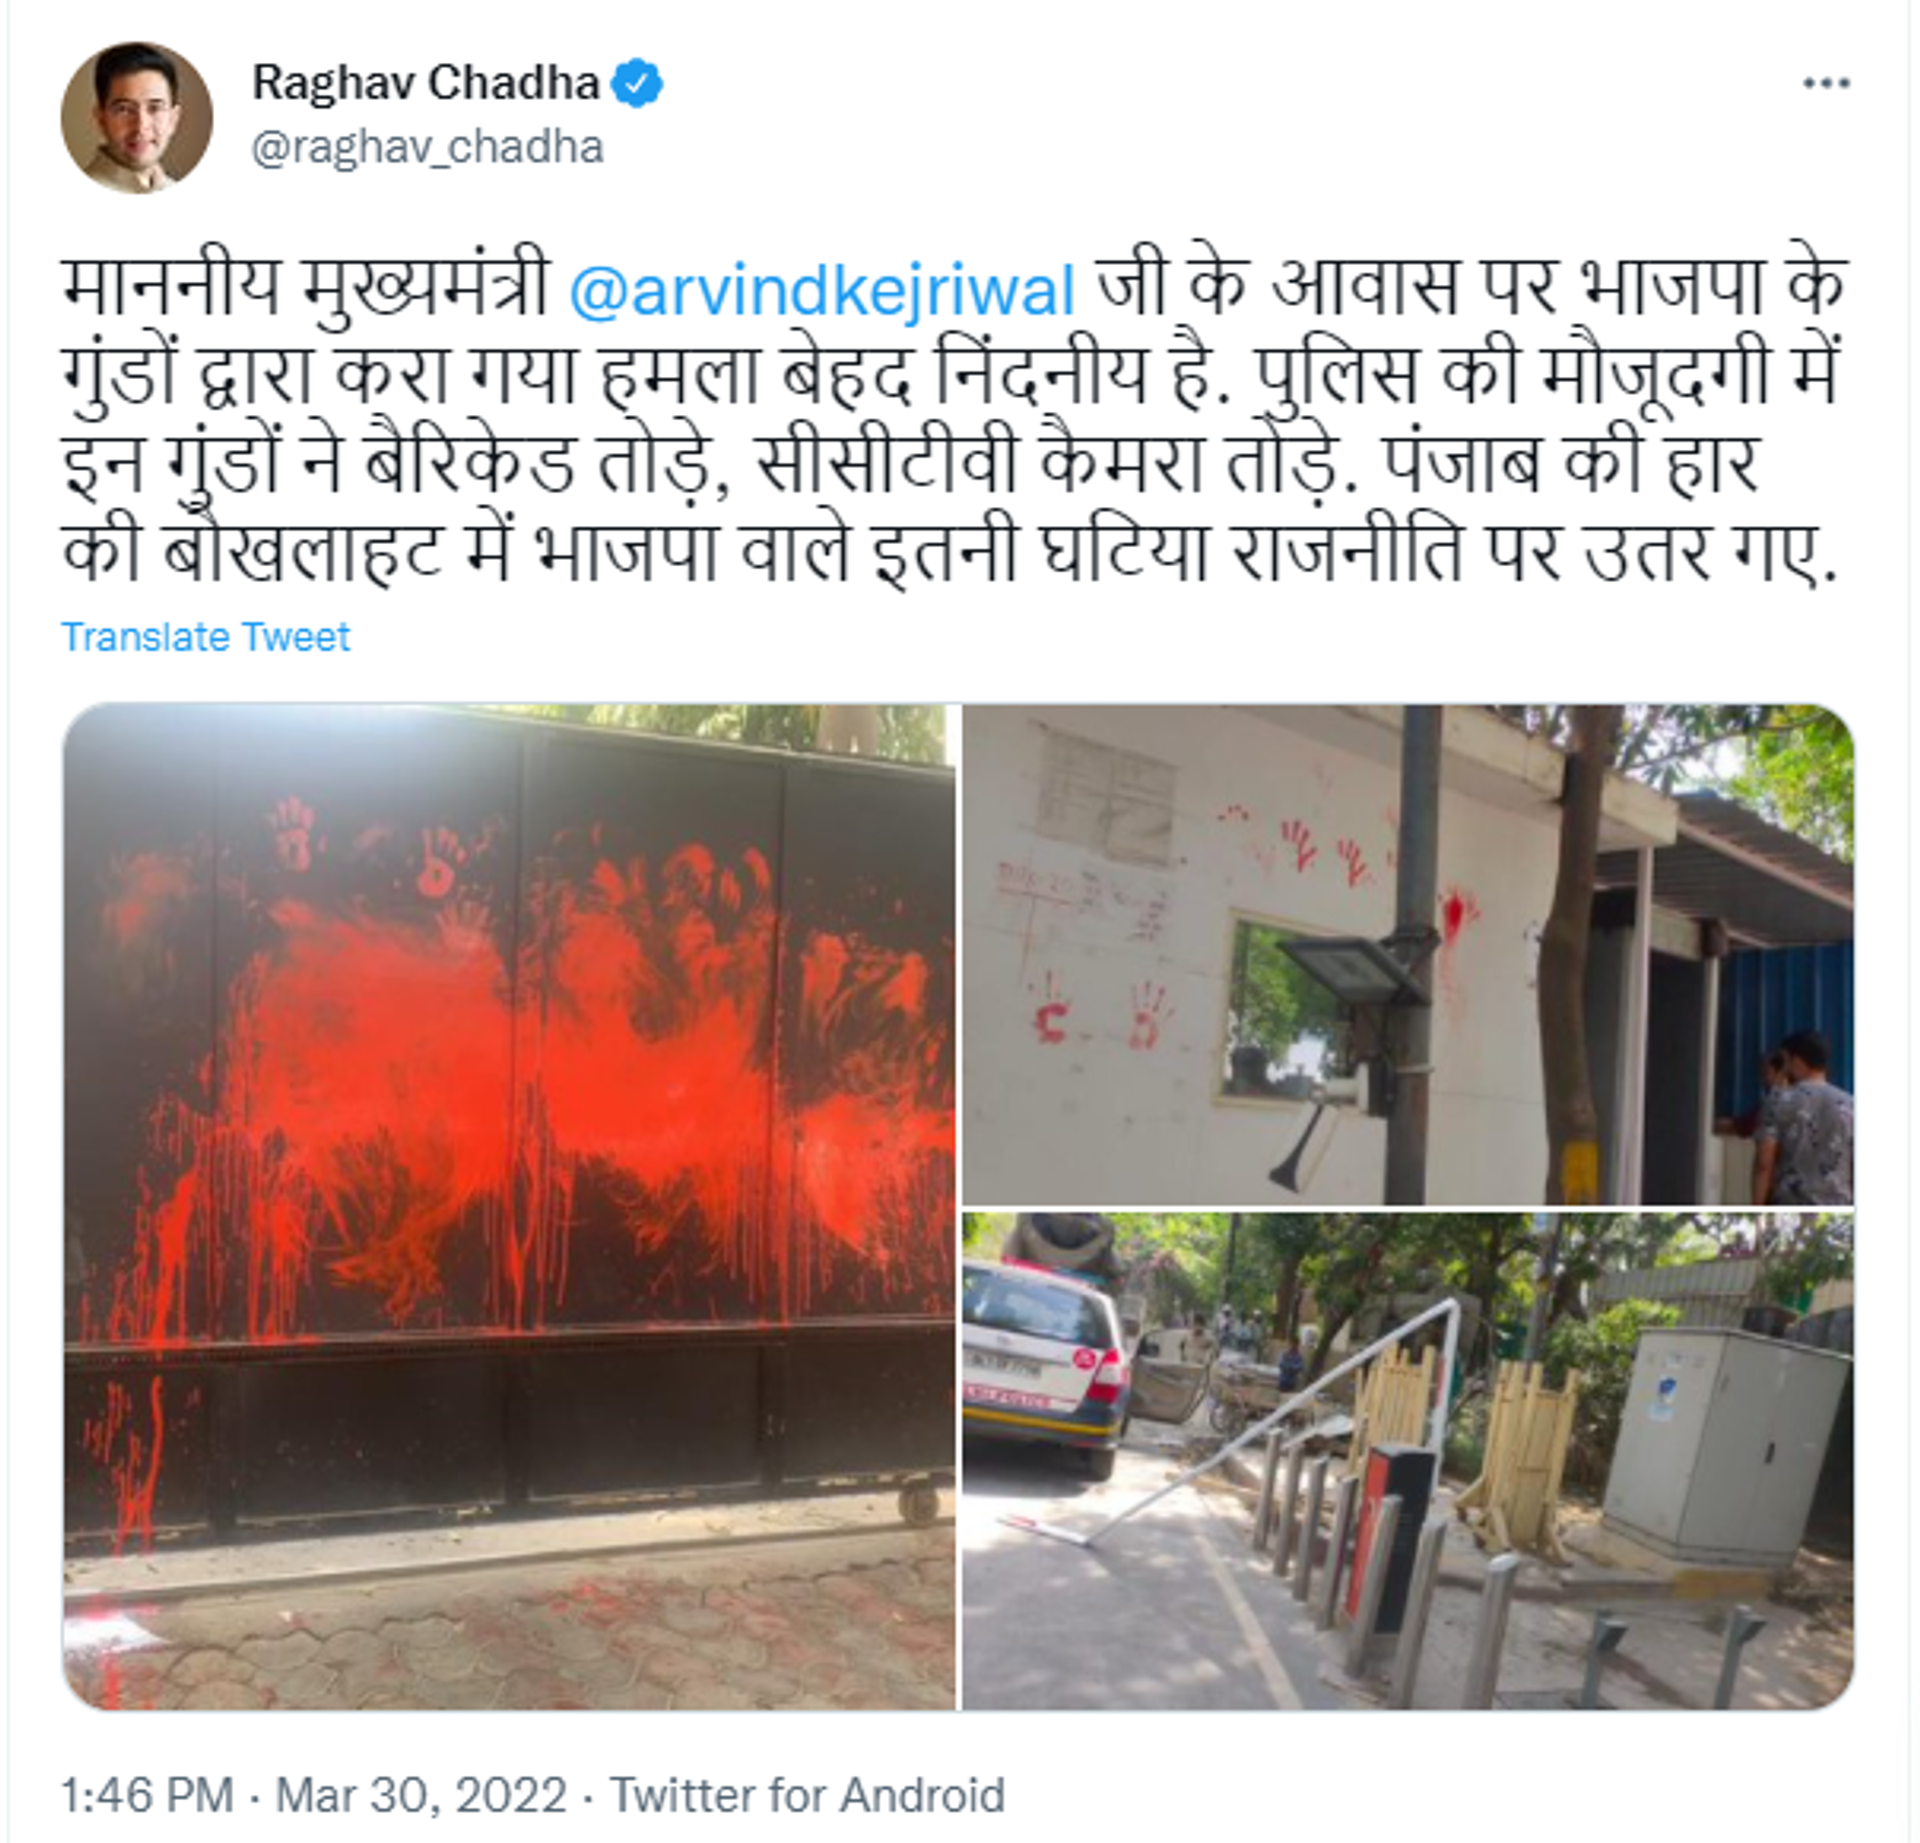 AAP Lawmaker Raghav Chadha Accuses BJP of Vandalising Residence of Arvind Kejriwal - Sputnik International, 1920, 30.03.2022